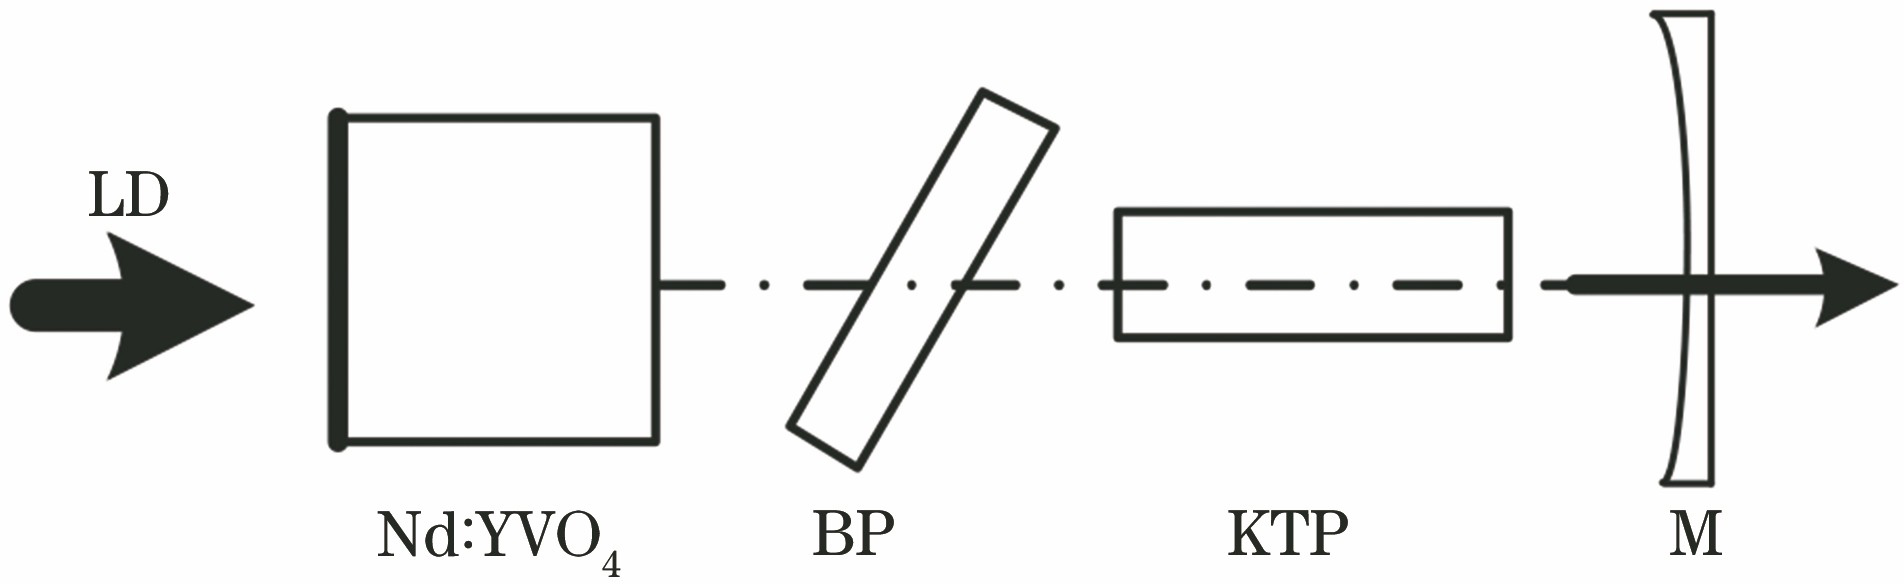 Schematic of birefringent filter